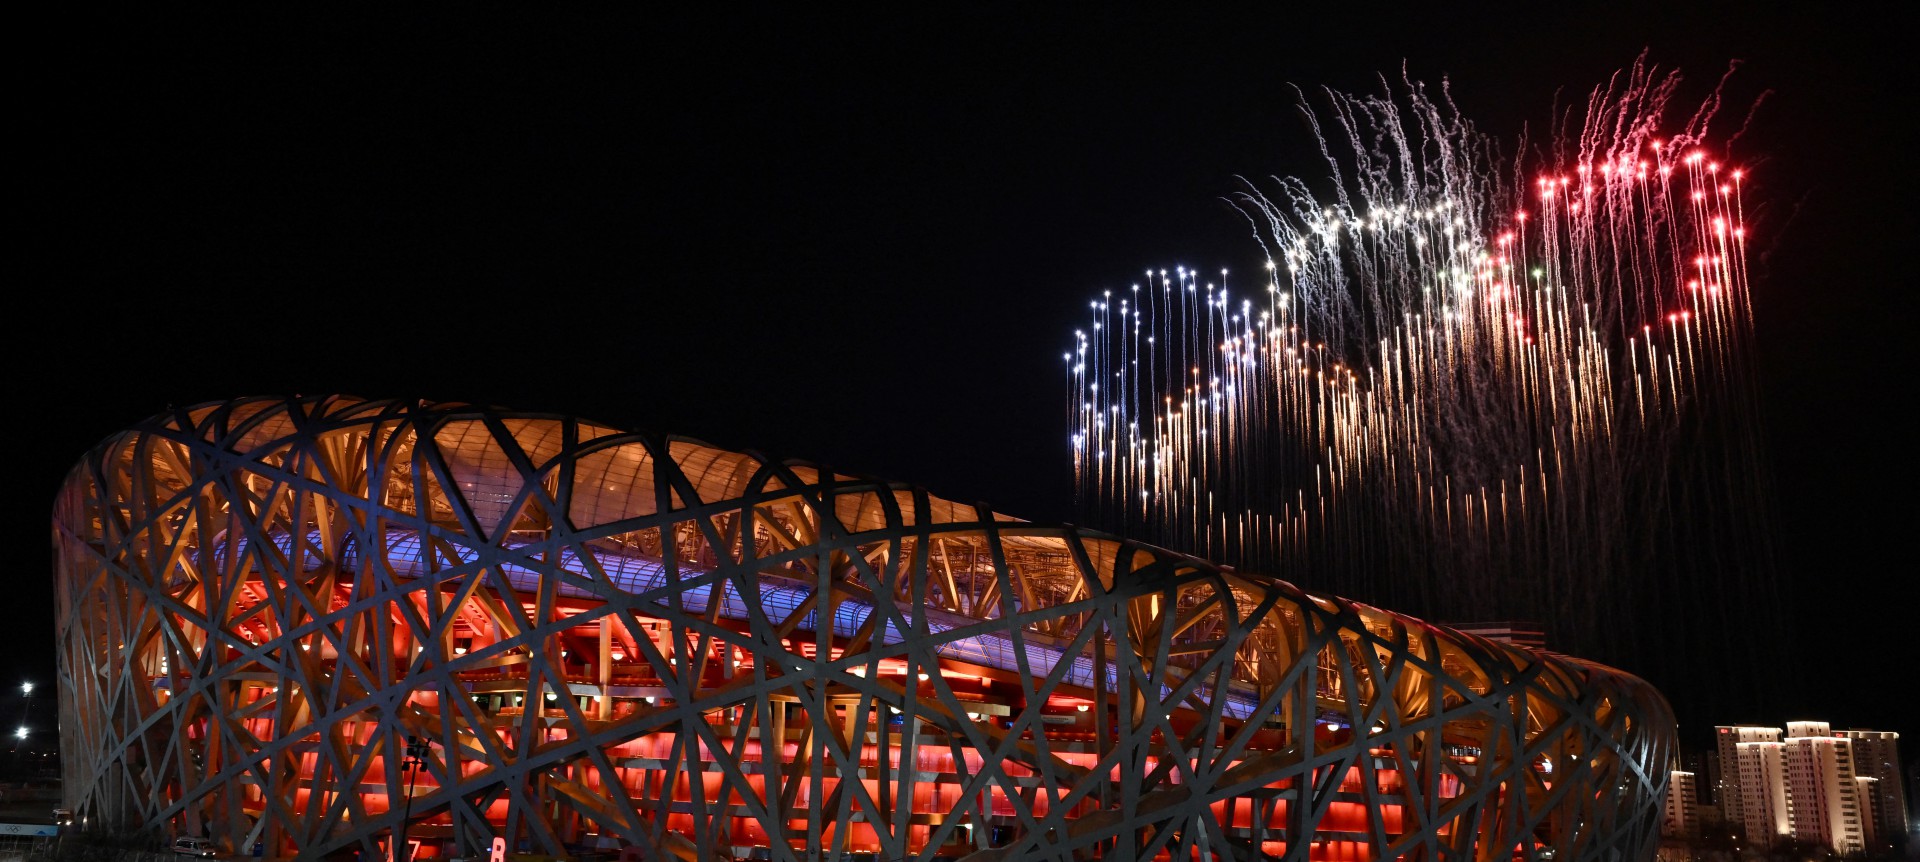 Abertura dos Jogos Olímpicos de Inverno de Pequim 2022, no Estádio Nacional, conhecido como Ninho de Pássaro, em Pequim, em 4 de fevereiro de 2022.